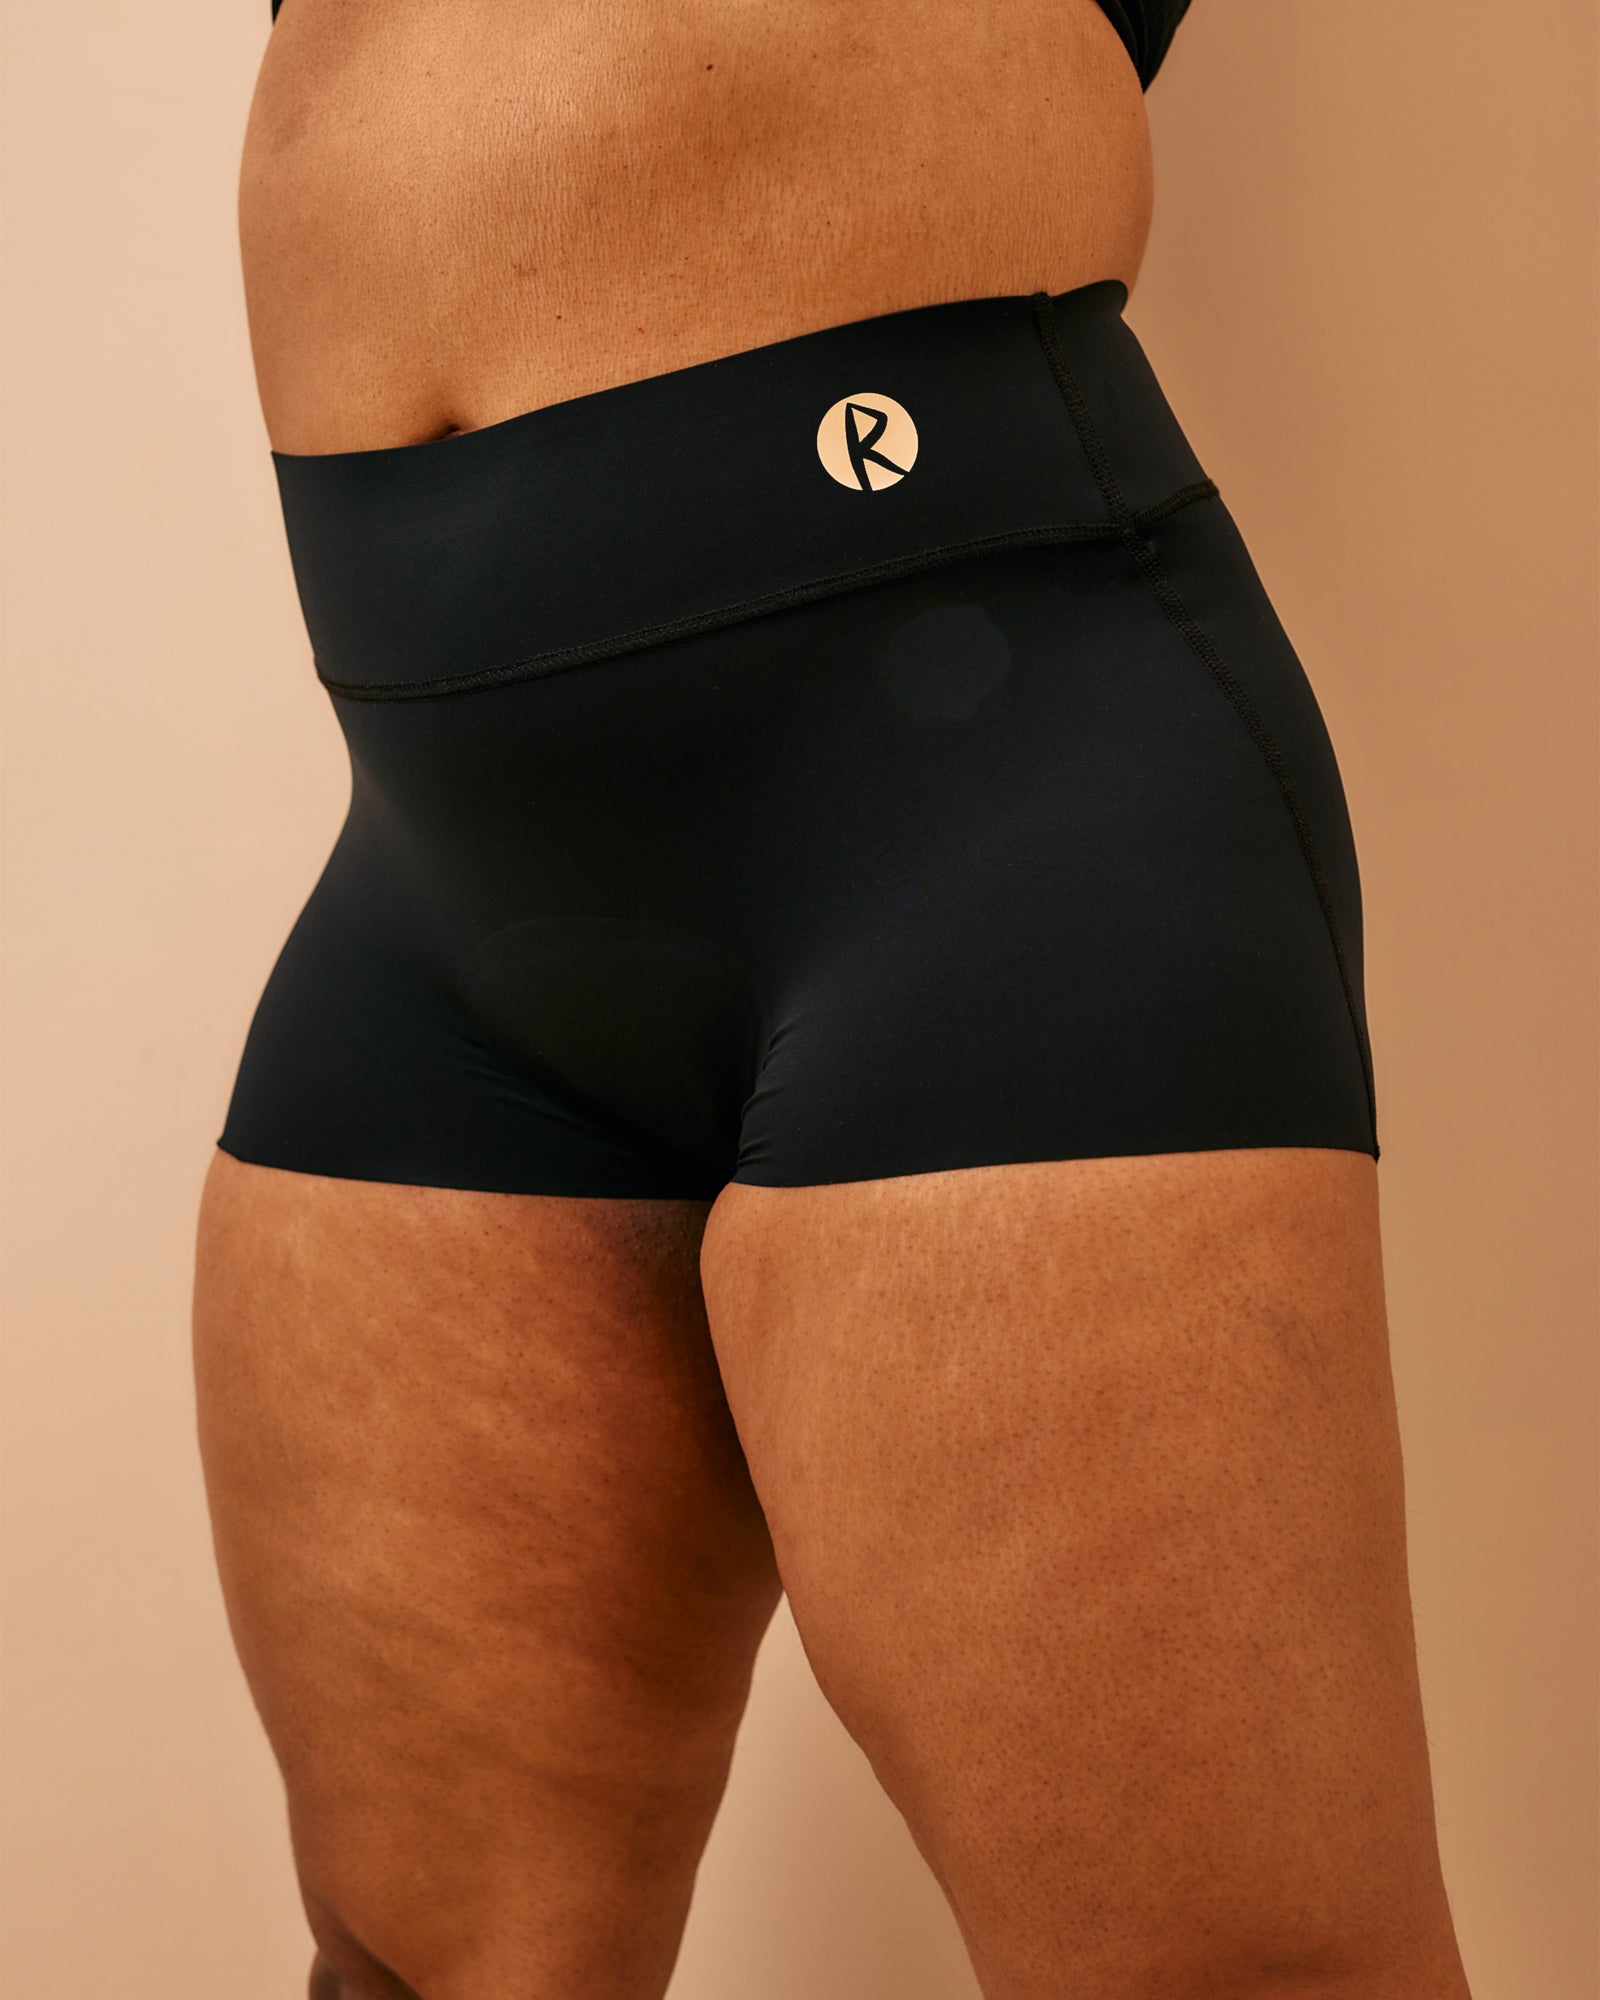 Super absorbent sports undies | Wide Waist | Boy Short | Black 1